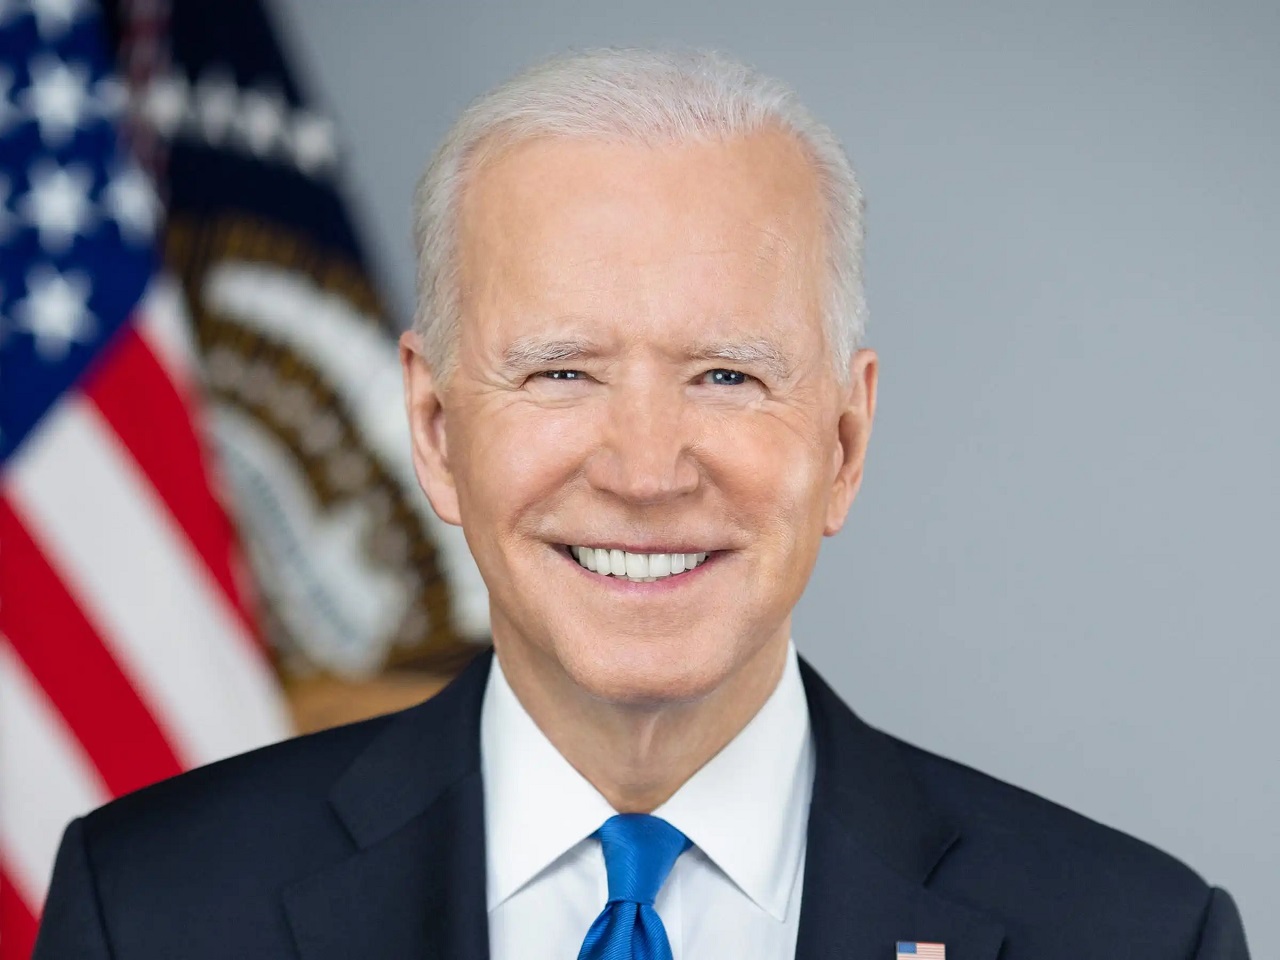 Joe Biden a választási vereség után együttműködne a republikánusok képviselőházi többségével